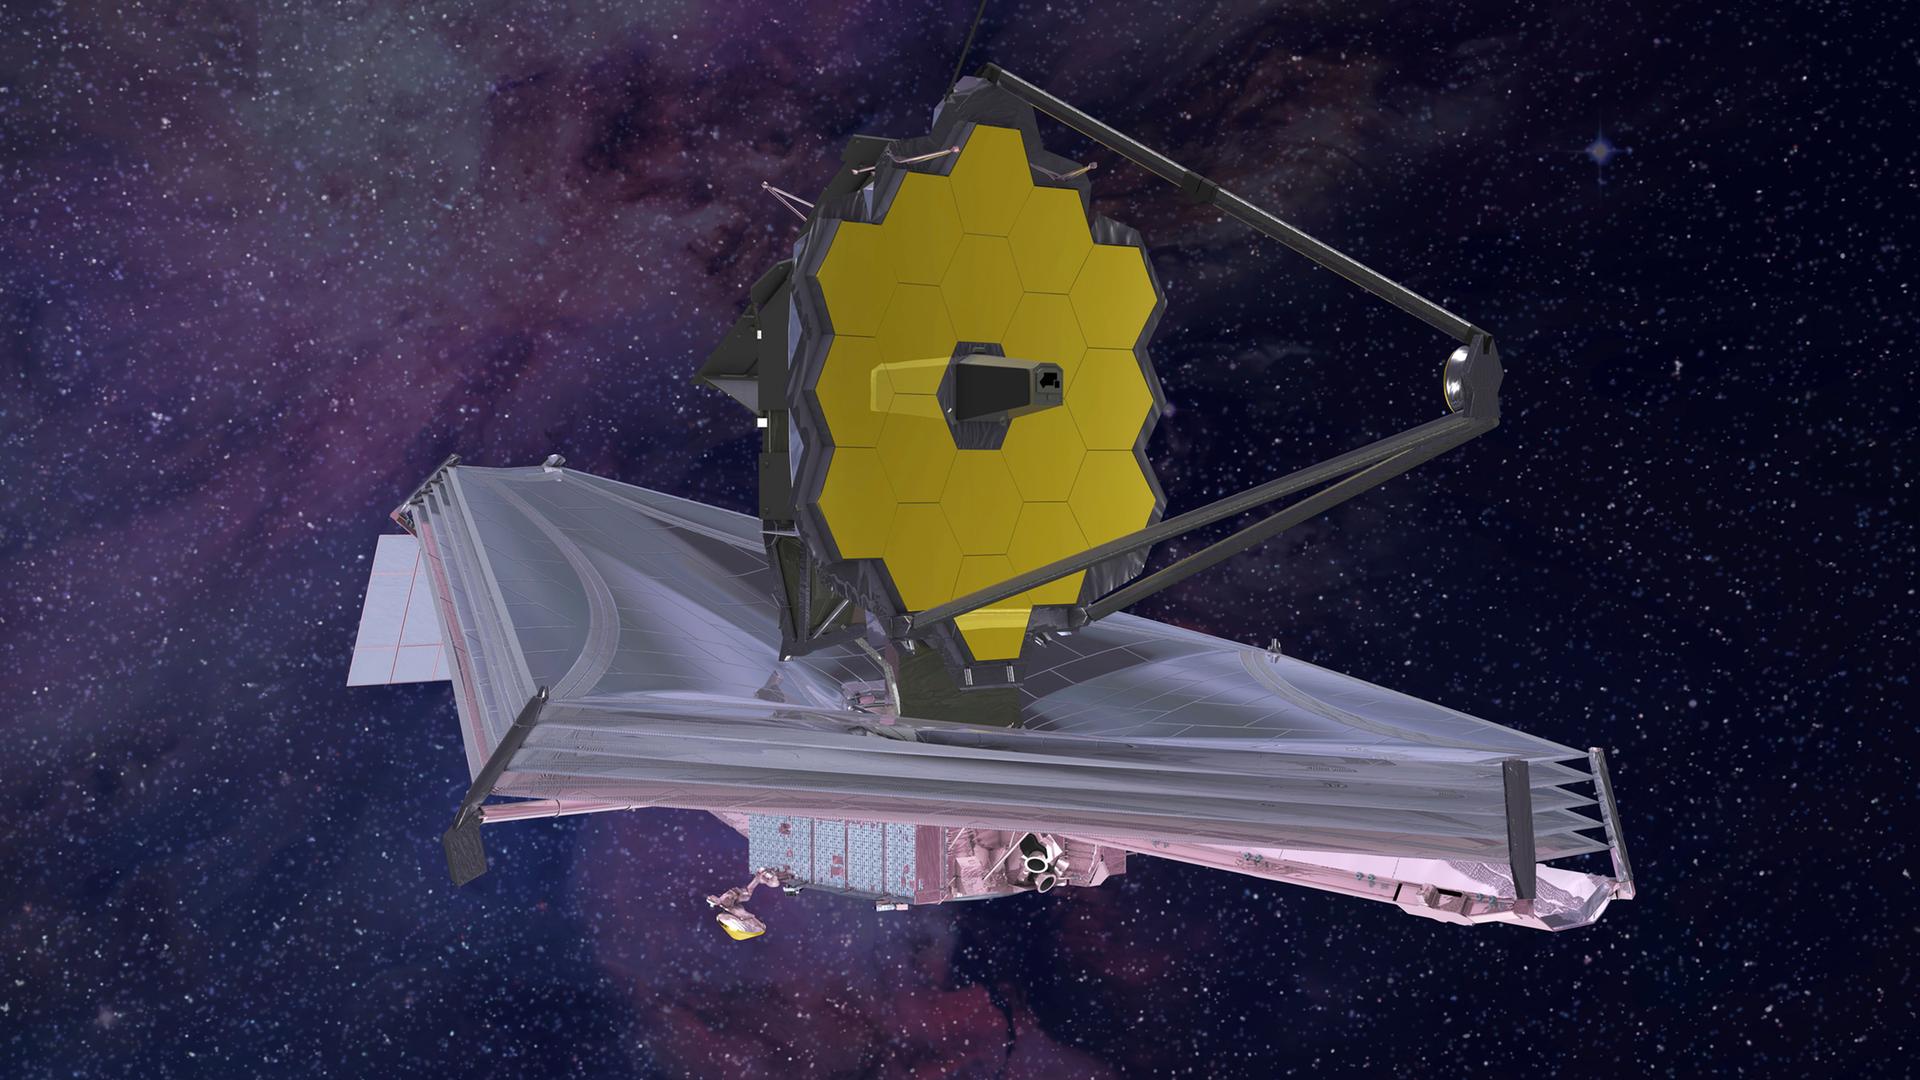 Eine Animation des James-Webb-Teleskops. Man sieht eine Art Satellitenschüssel auf einem Flugkörper.